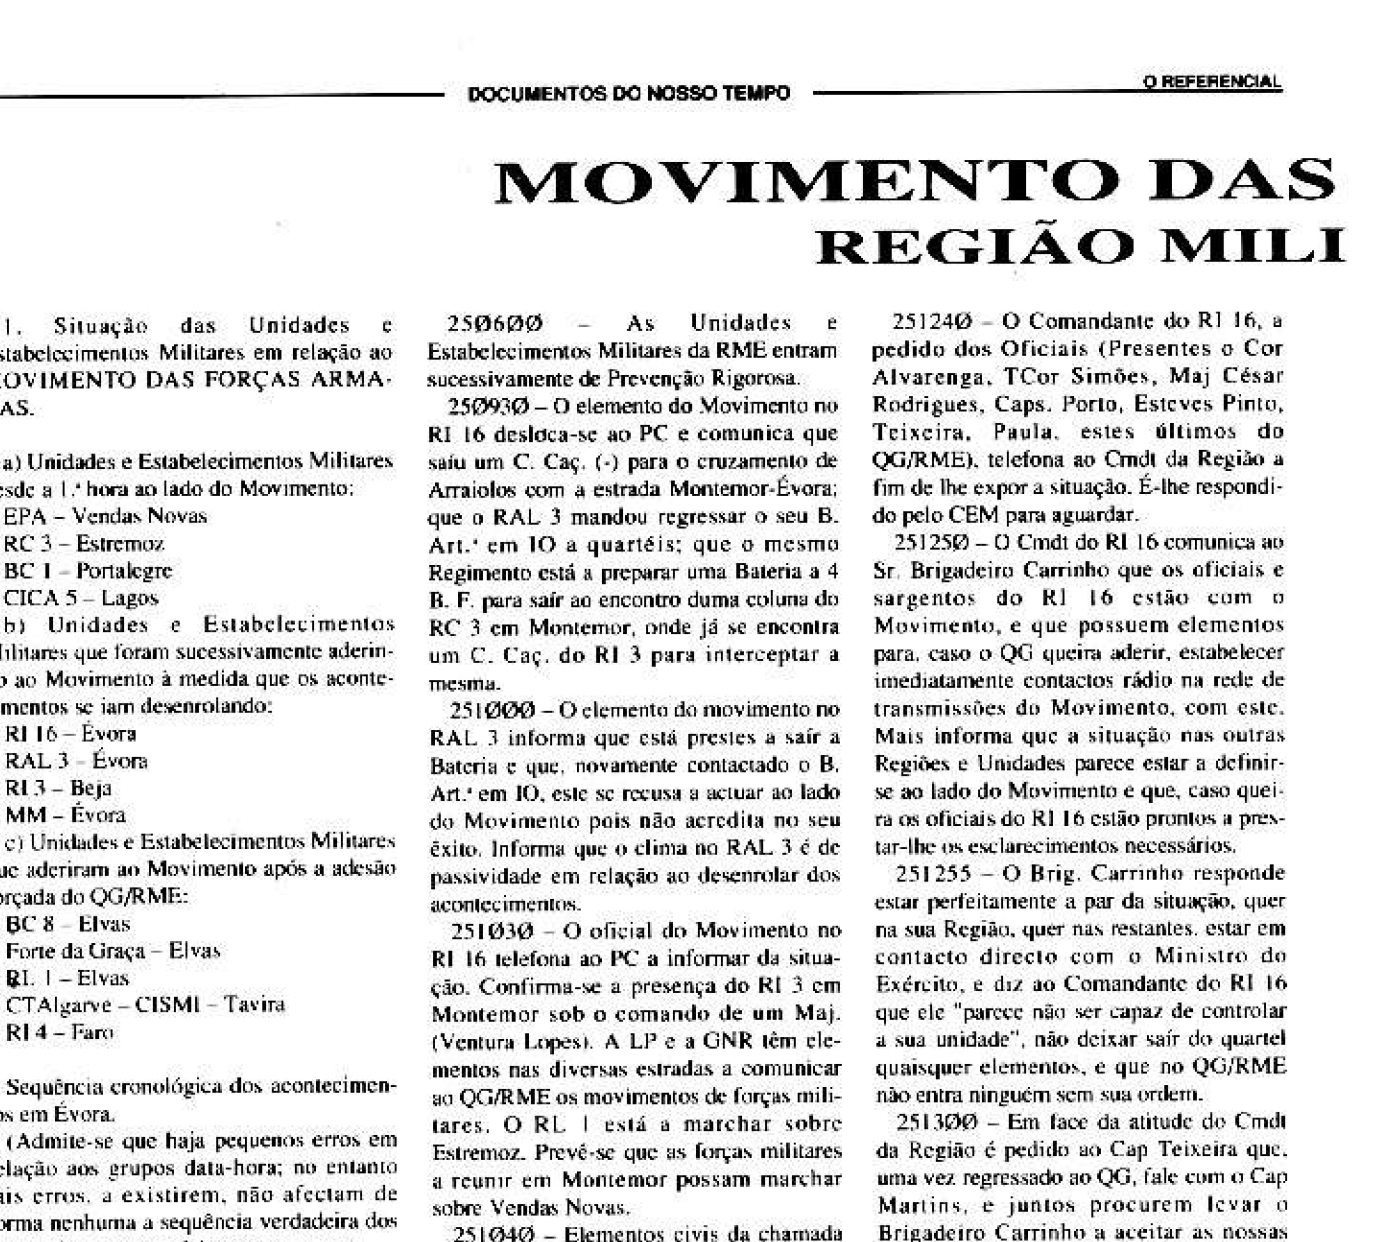 "Movimento das Forças Armadas" na Região Militar de Évora (Referencial nº32)